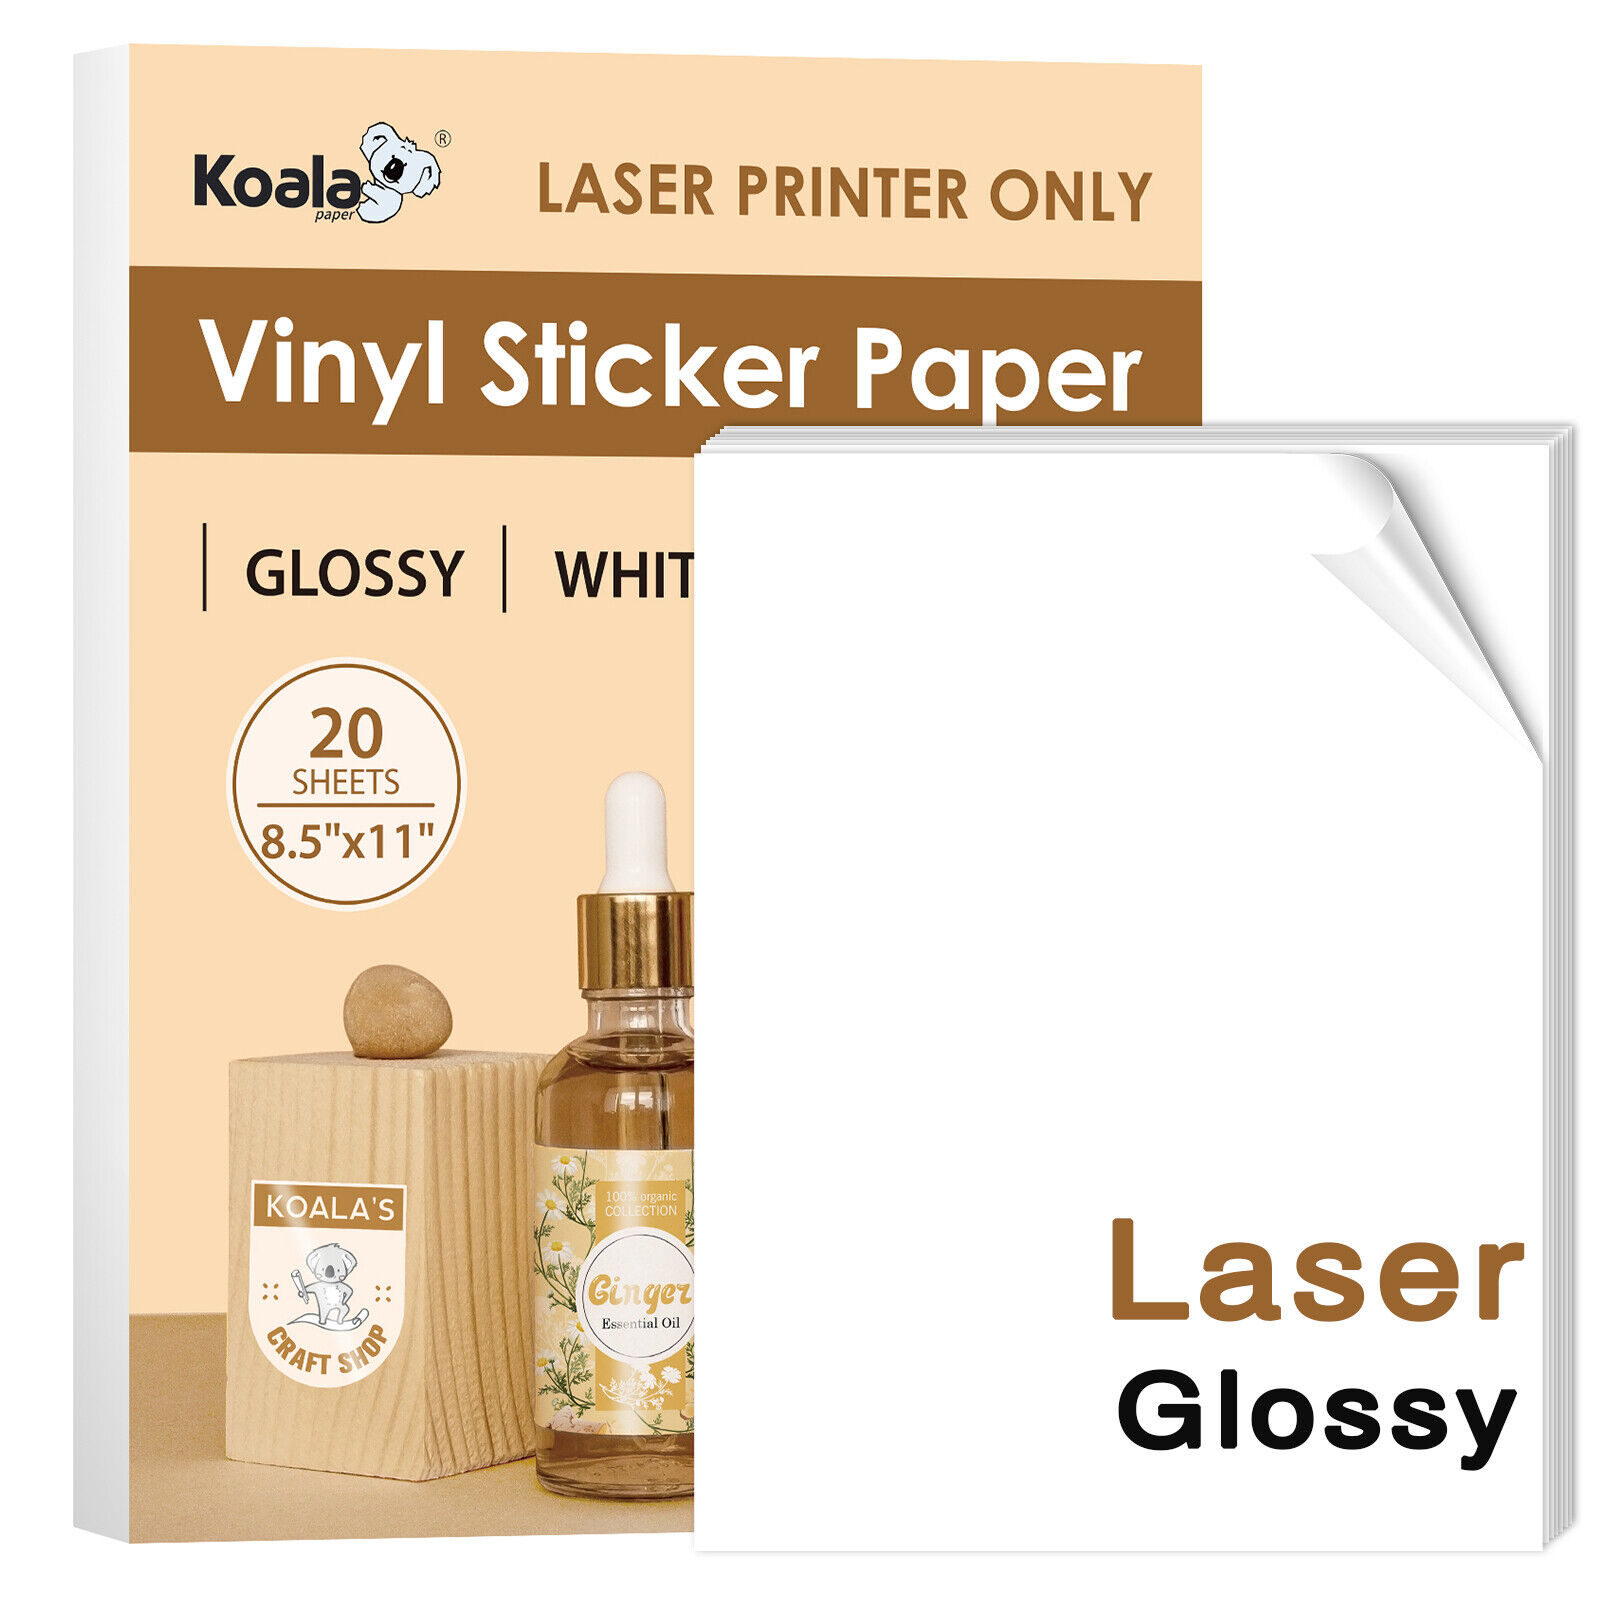 Koala Printable Vinyl Sticker Paper for LASER Printer Glossy/ Matte/ Clear Label